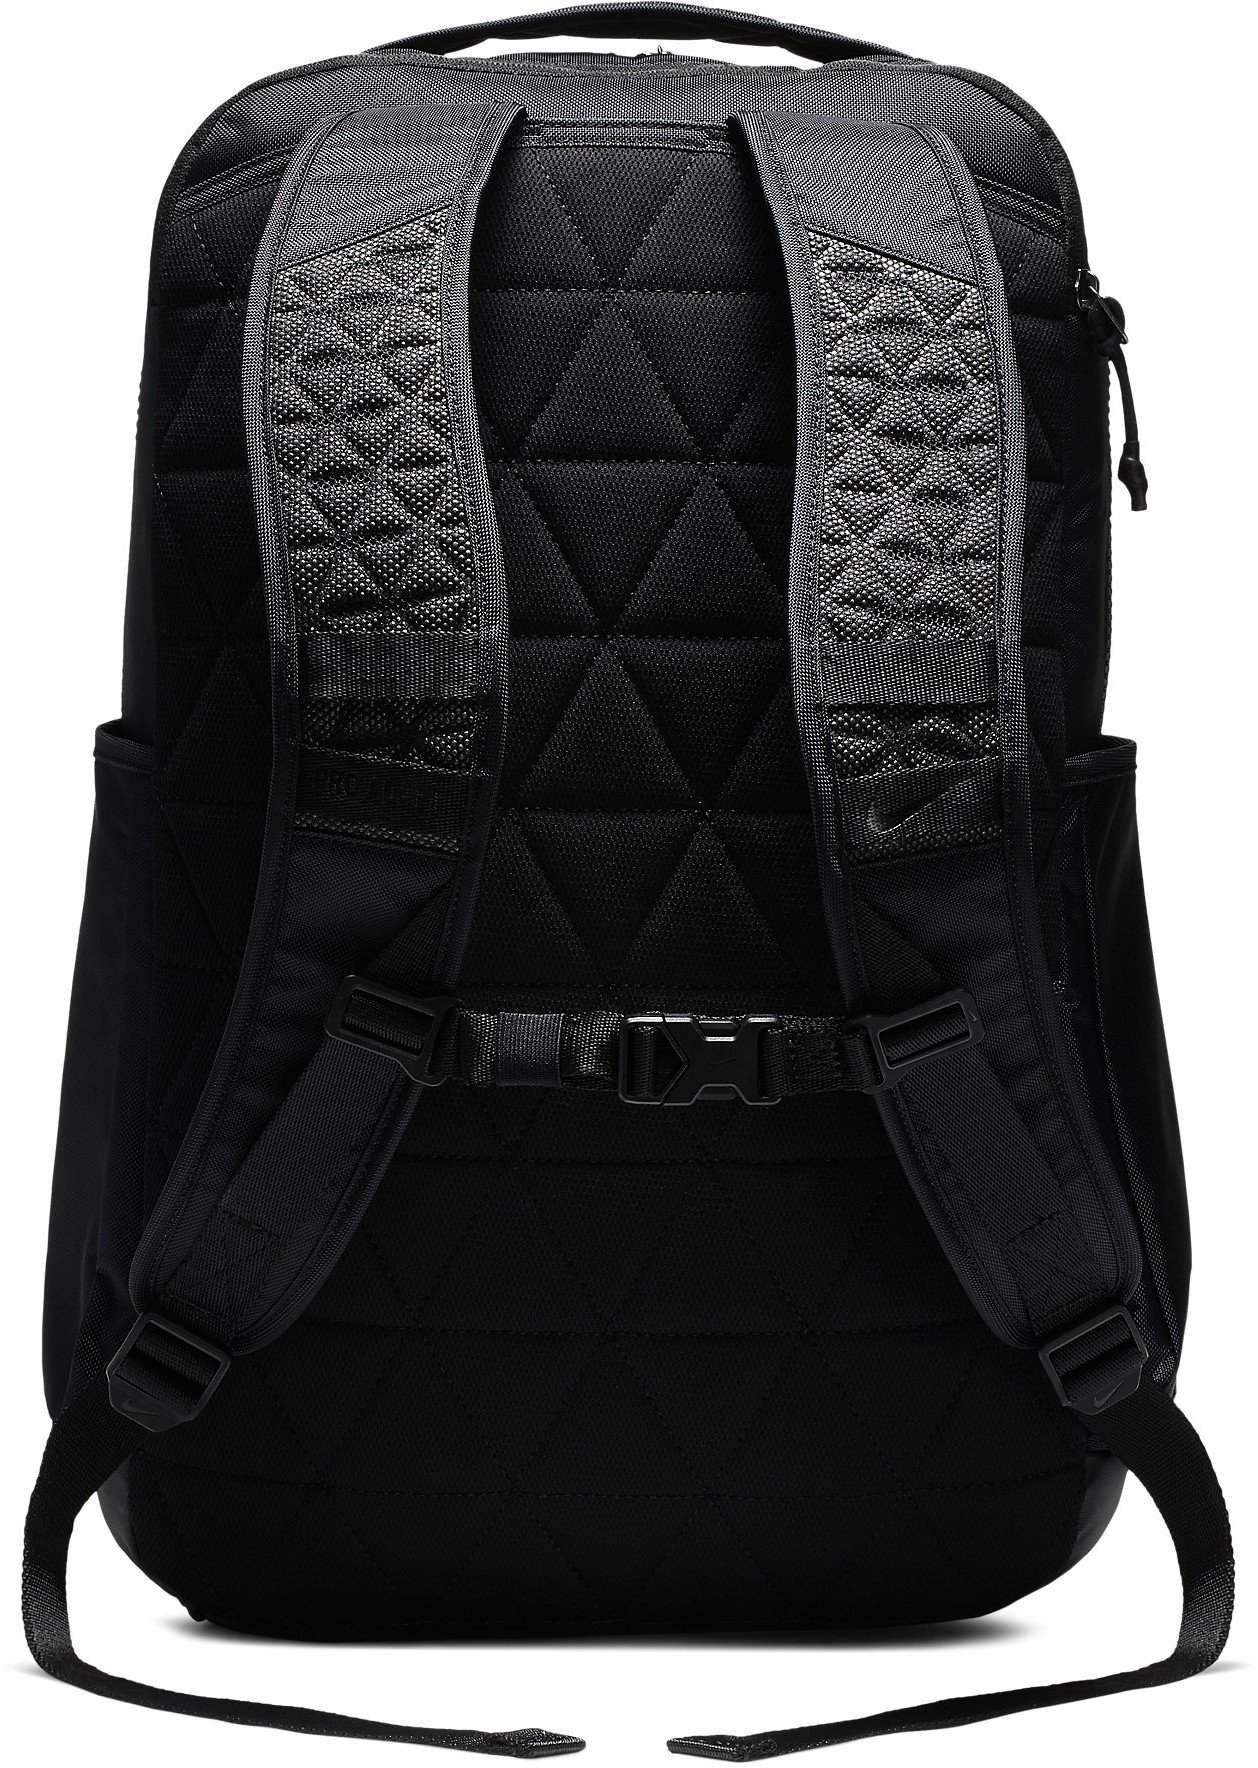 Backpack Nike NK VPR POWER BKPK - GFX 